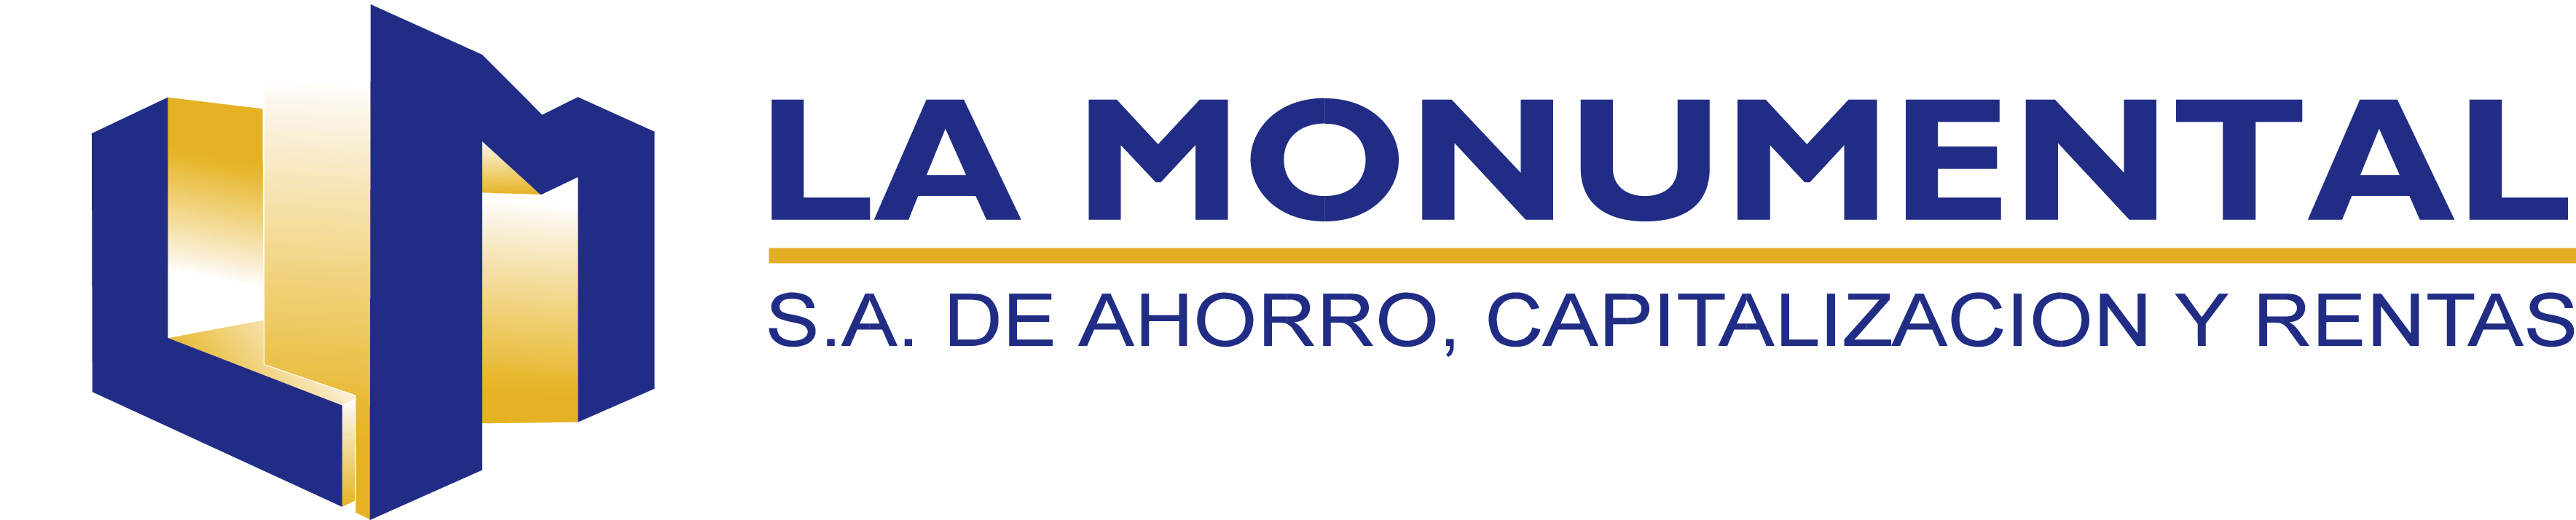 Logo de LA MONUMENTAL, S.A de ahorro, capitalizacion y rentas